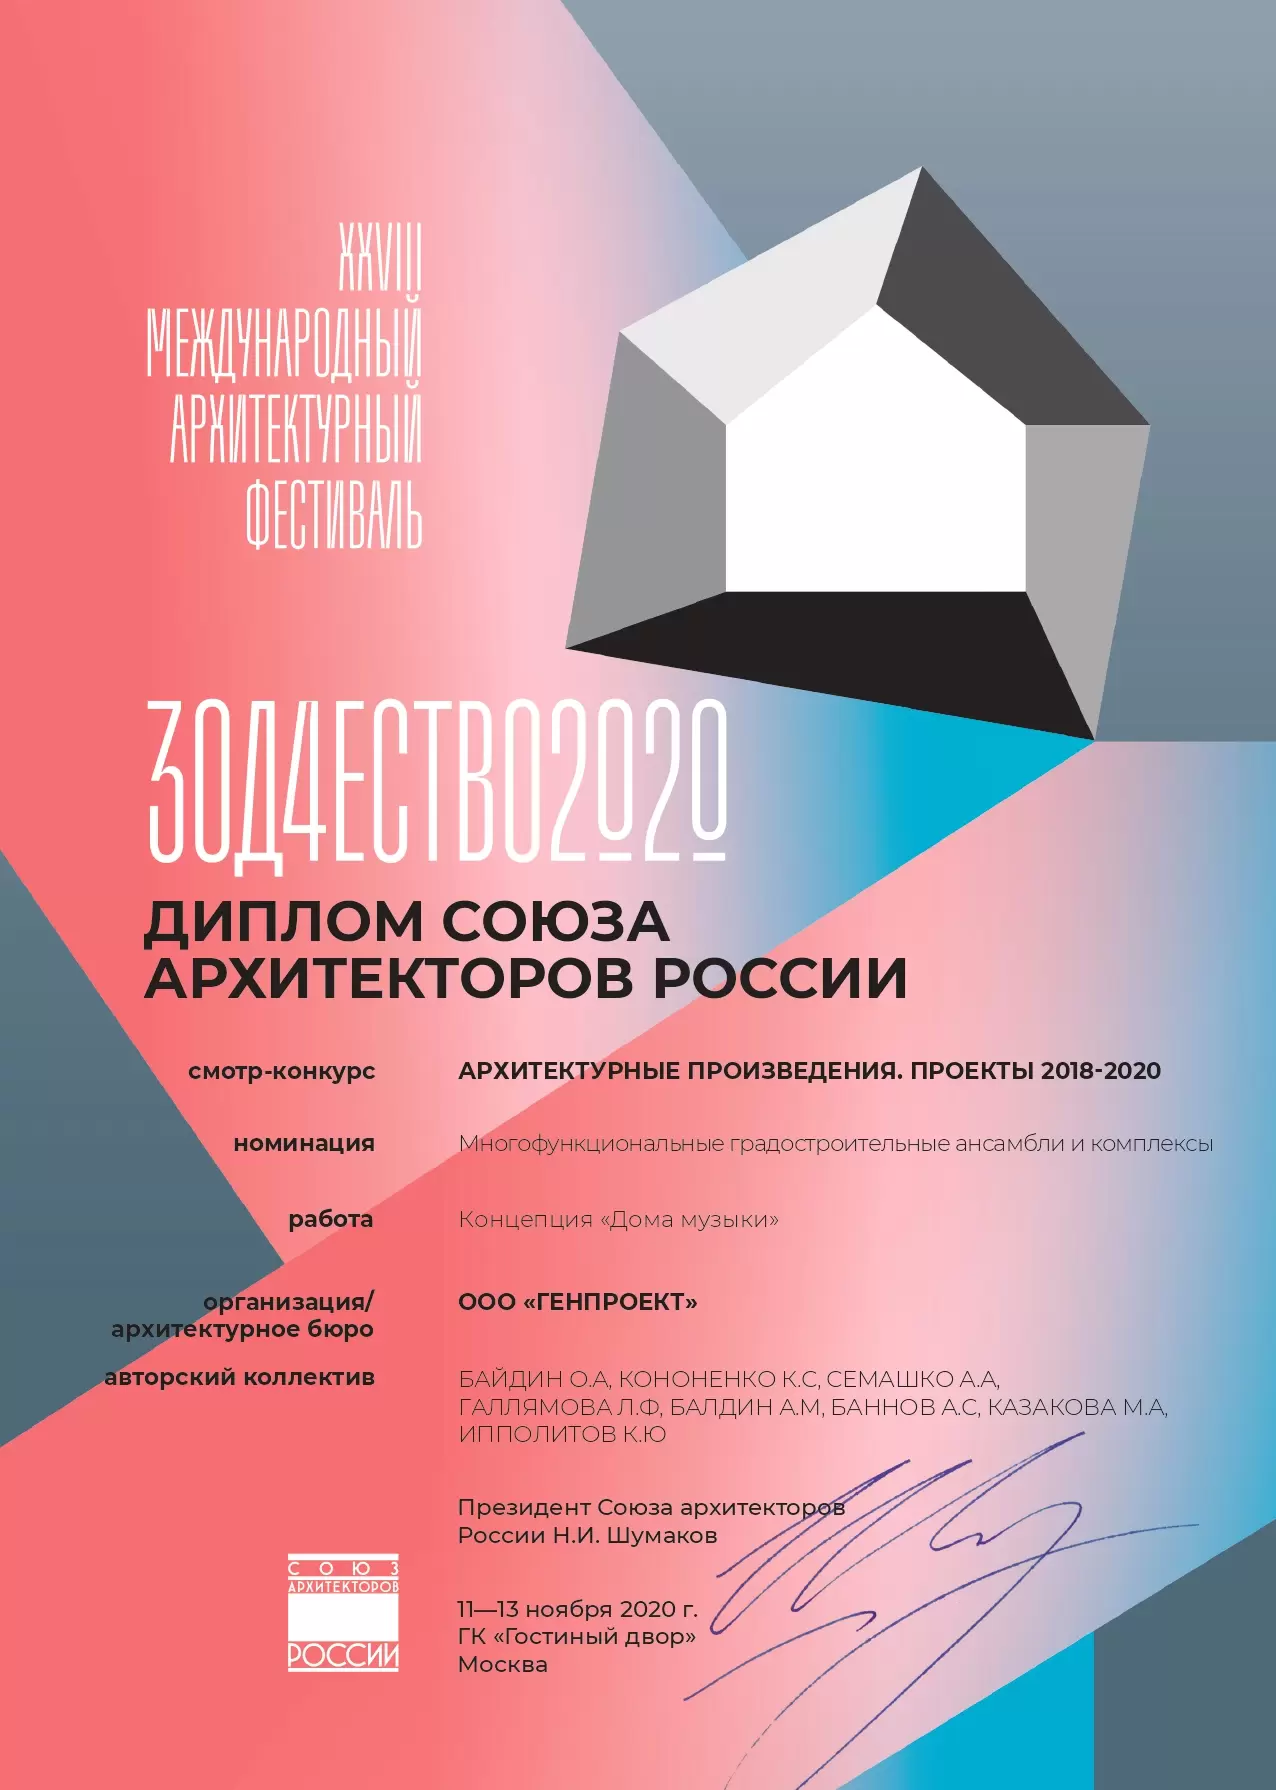 XXVIII Международный архитектурный фестиваль ЗОДЧЕСТВО 2020